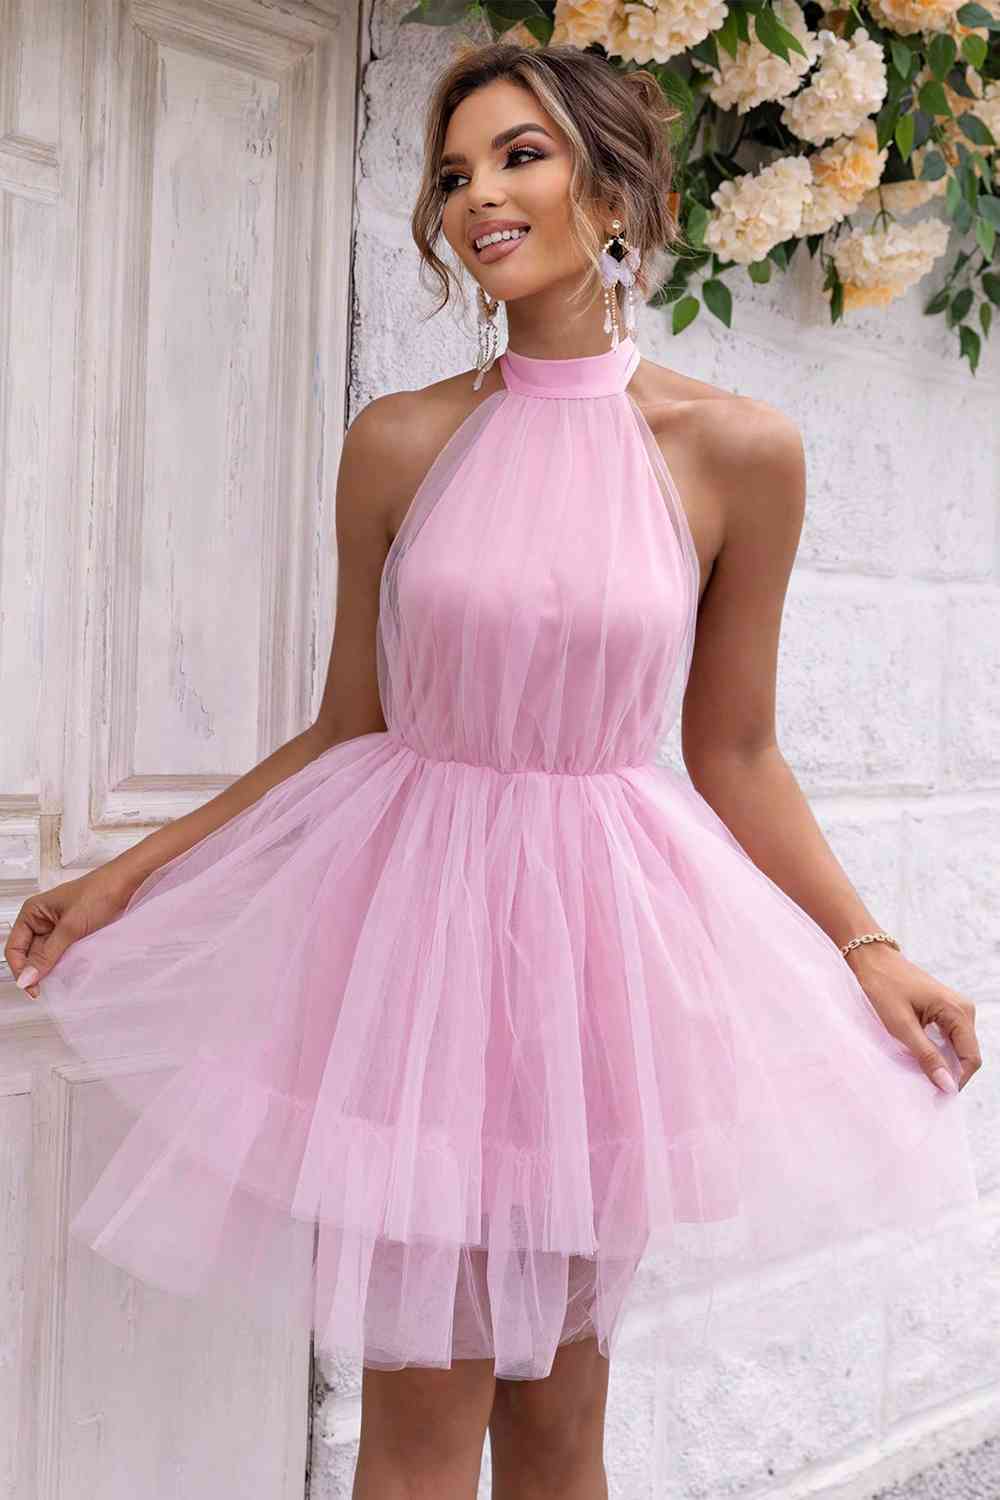 Sweetheart Dress